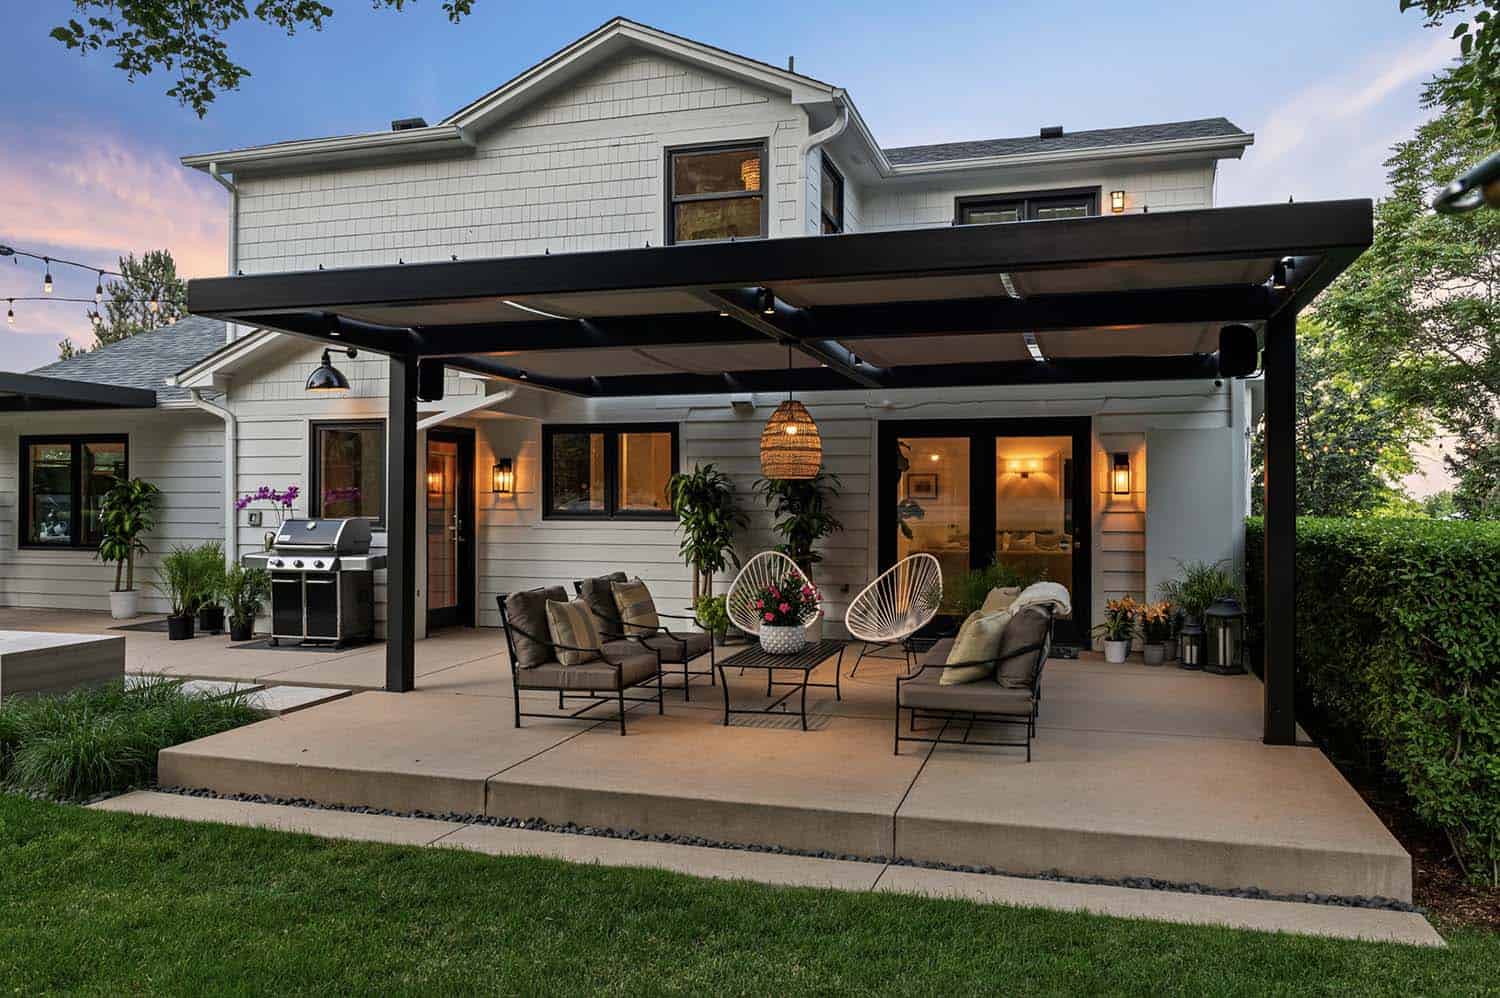 13 Stunning Gazebo Ideas for a Relaxing Backyard Retreat - Bob Vila